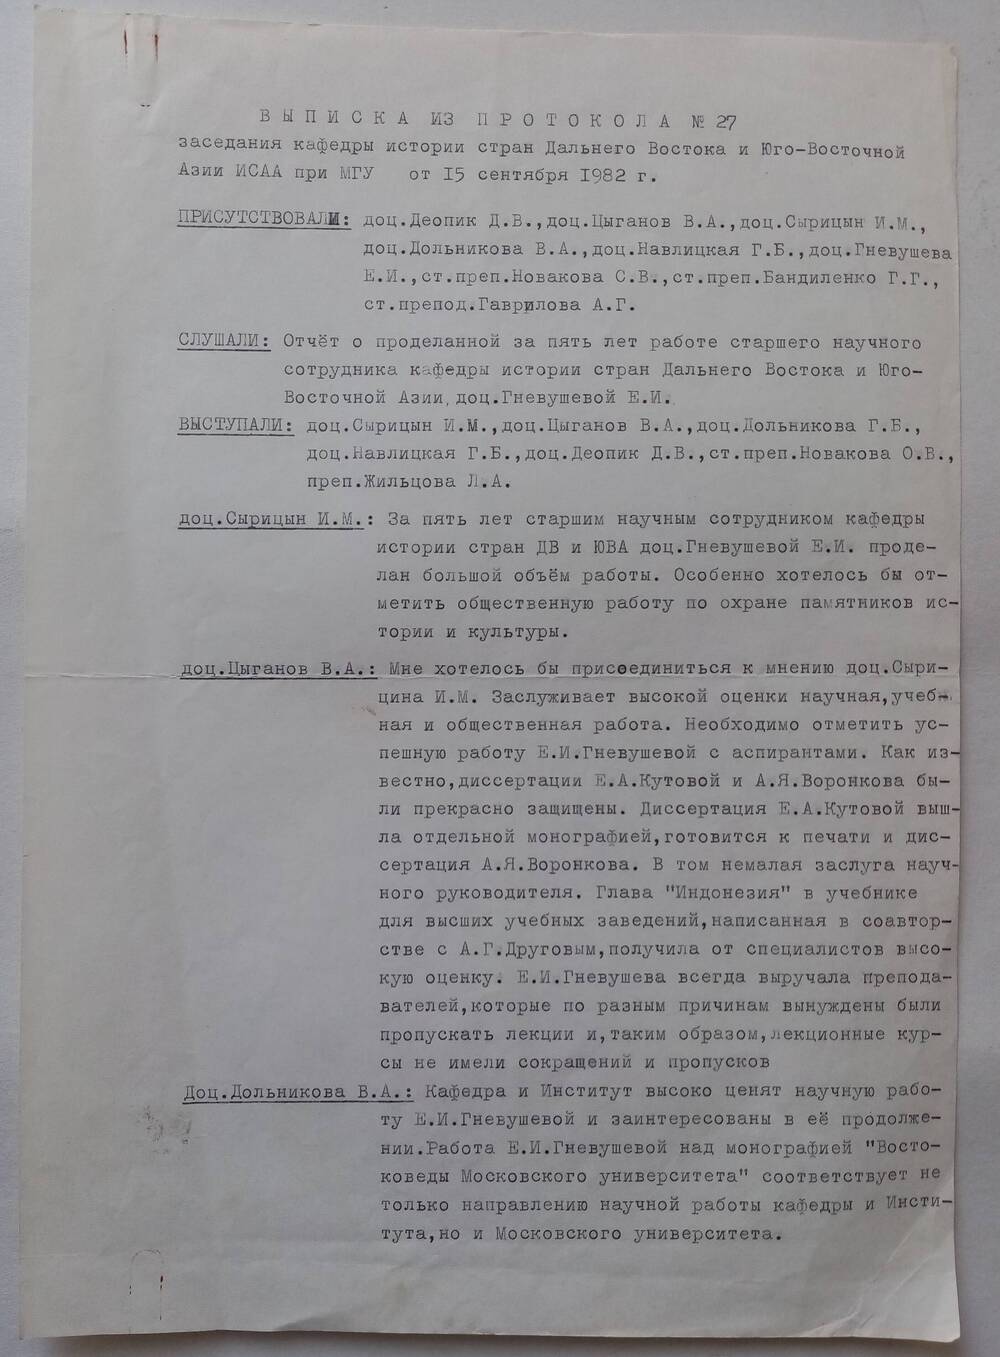 Выписка из протокола № 27 от 15,09.1982 года о переизбрании Гнвушевой Елизаветы Ивановны на новый срок в должности старшего научного сотрудника